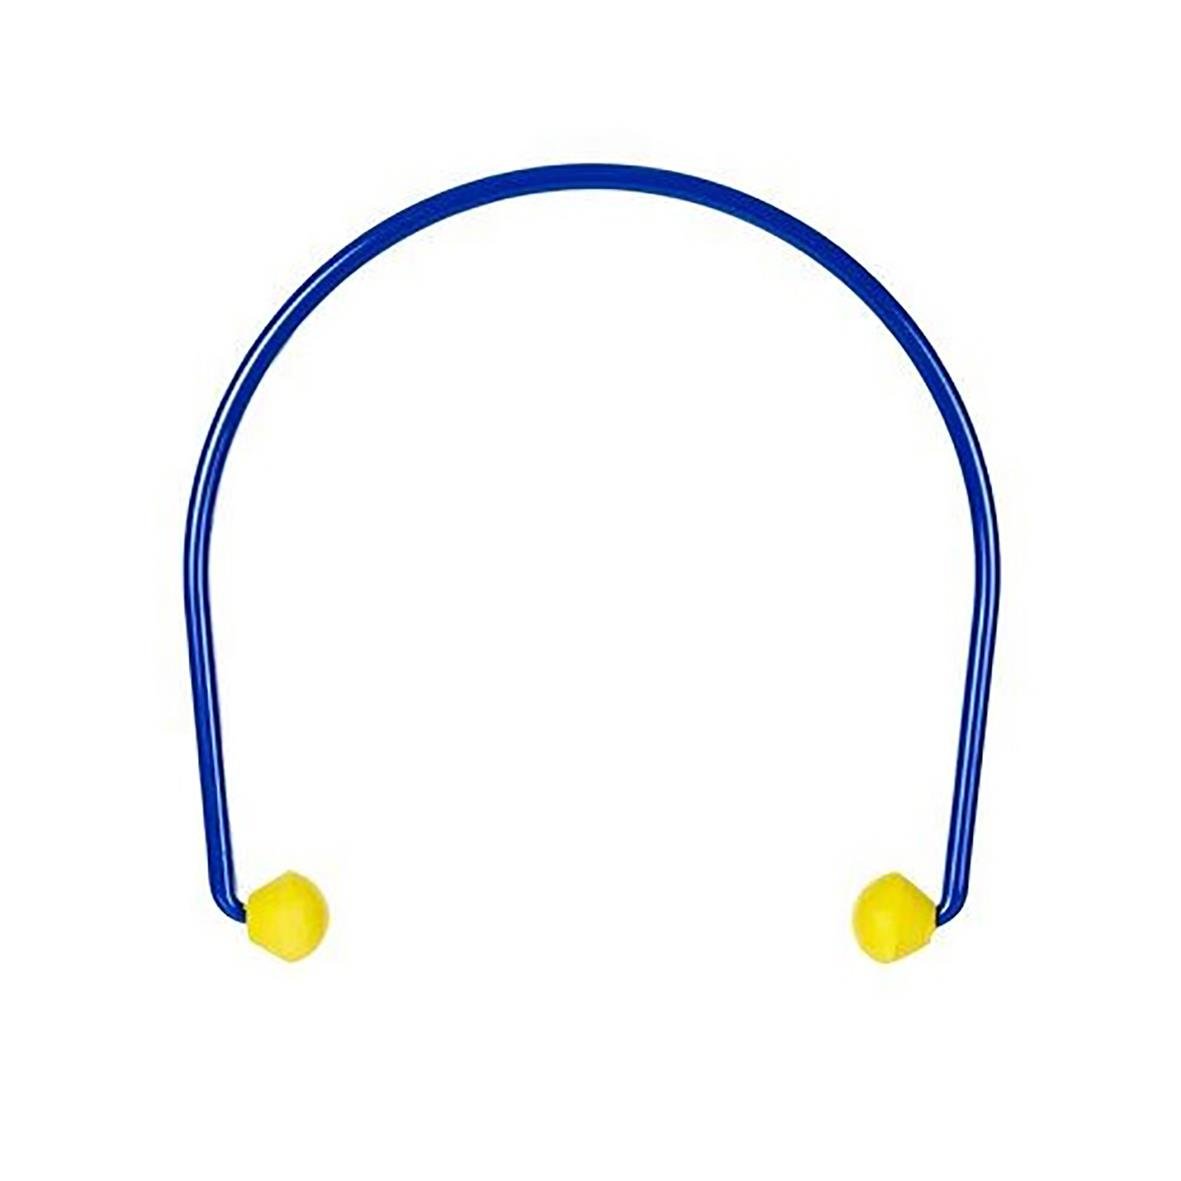 Hörselpropp 3M EarCaps med bygel blå/gul